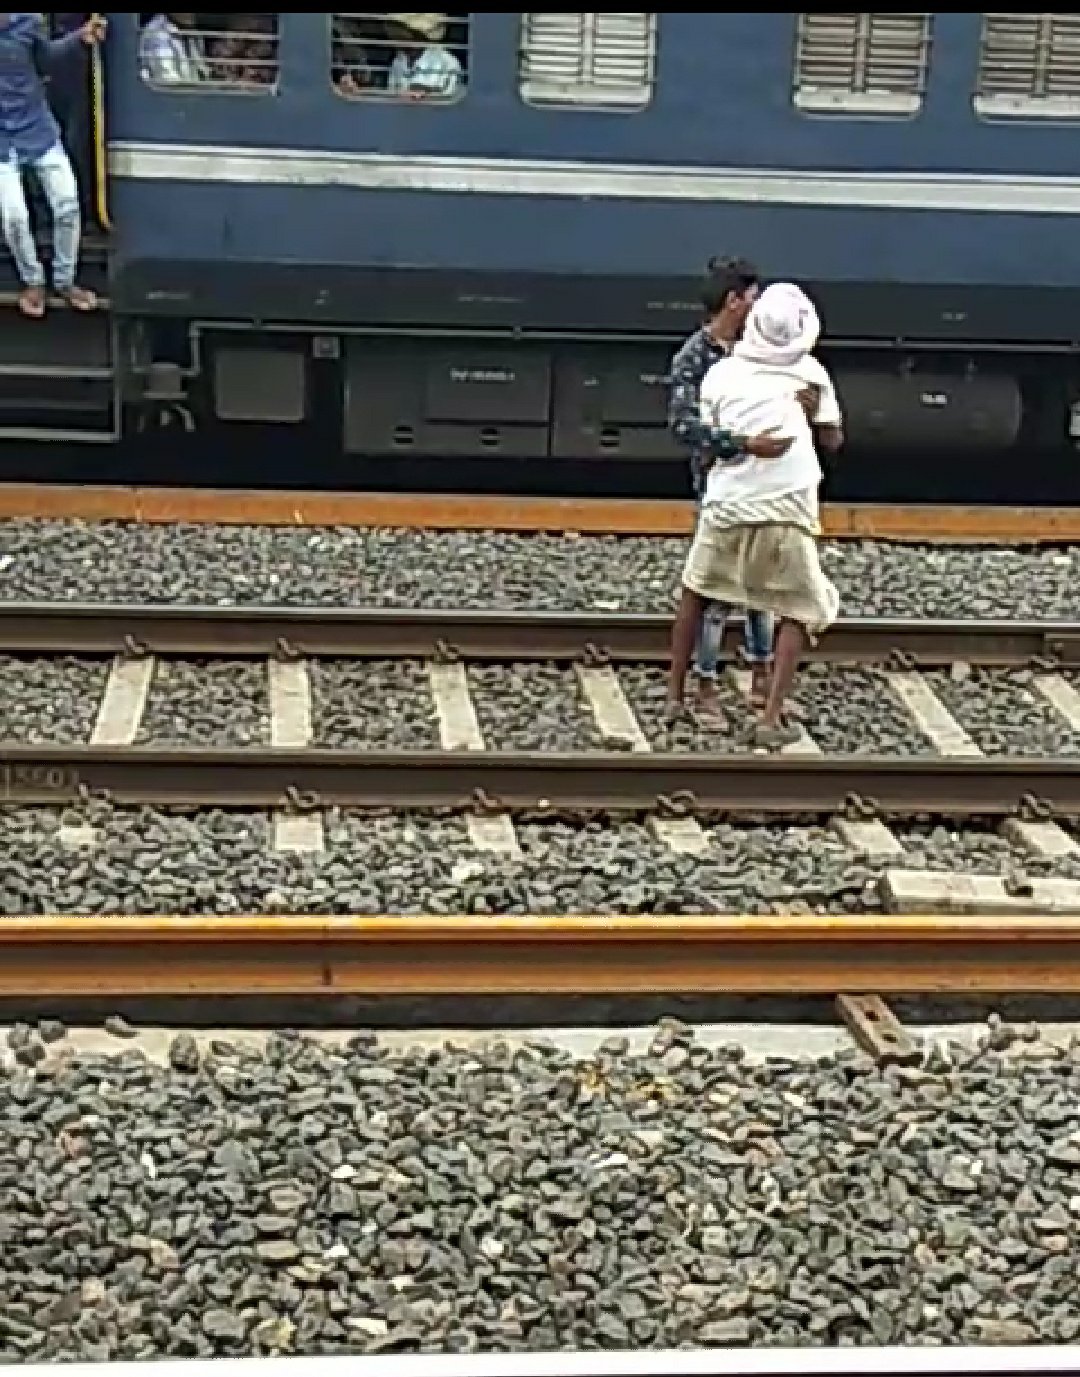 जाको राखे साइयां मार सके ना कोय: मालगाड़ी ट्रेन ऊपर से गुजर जाने के बाद भी बुजुर्ग व्यक्ति को नहीं आई खरोंच | New India Times